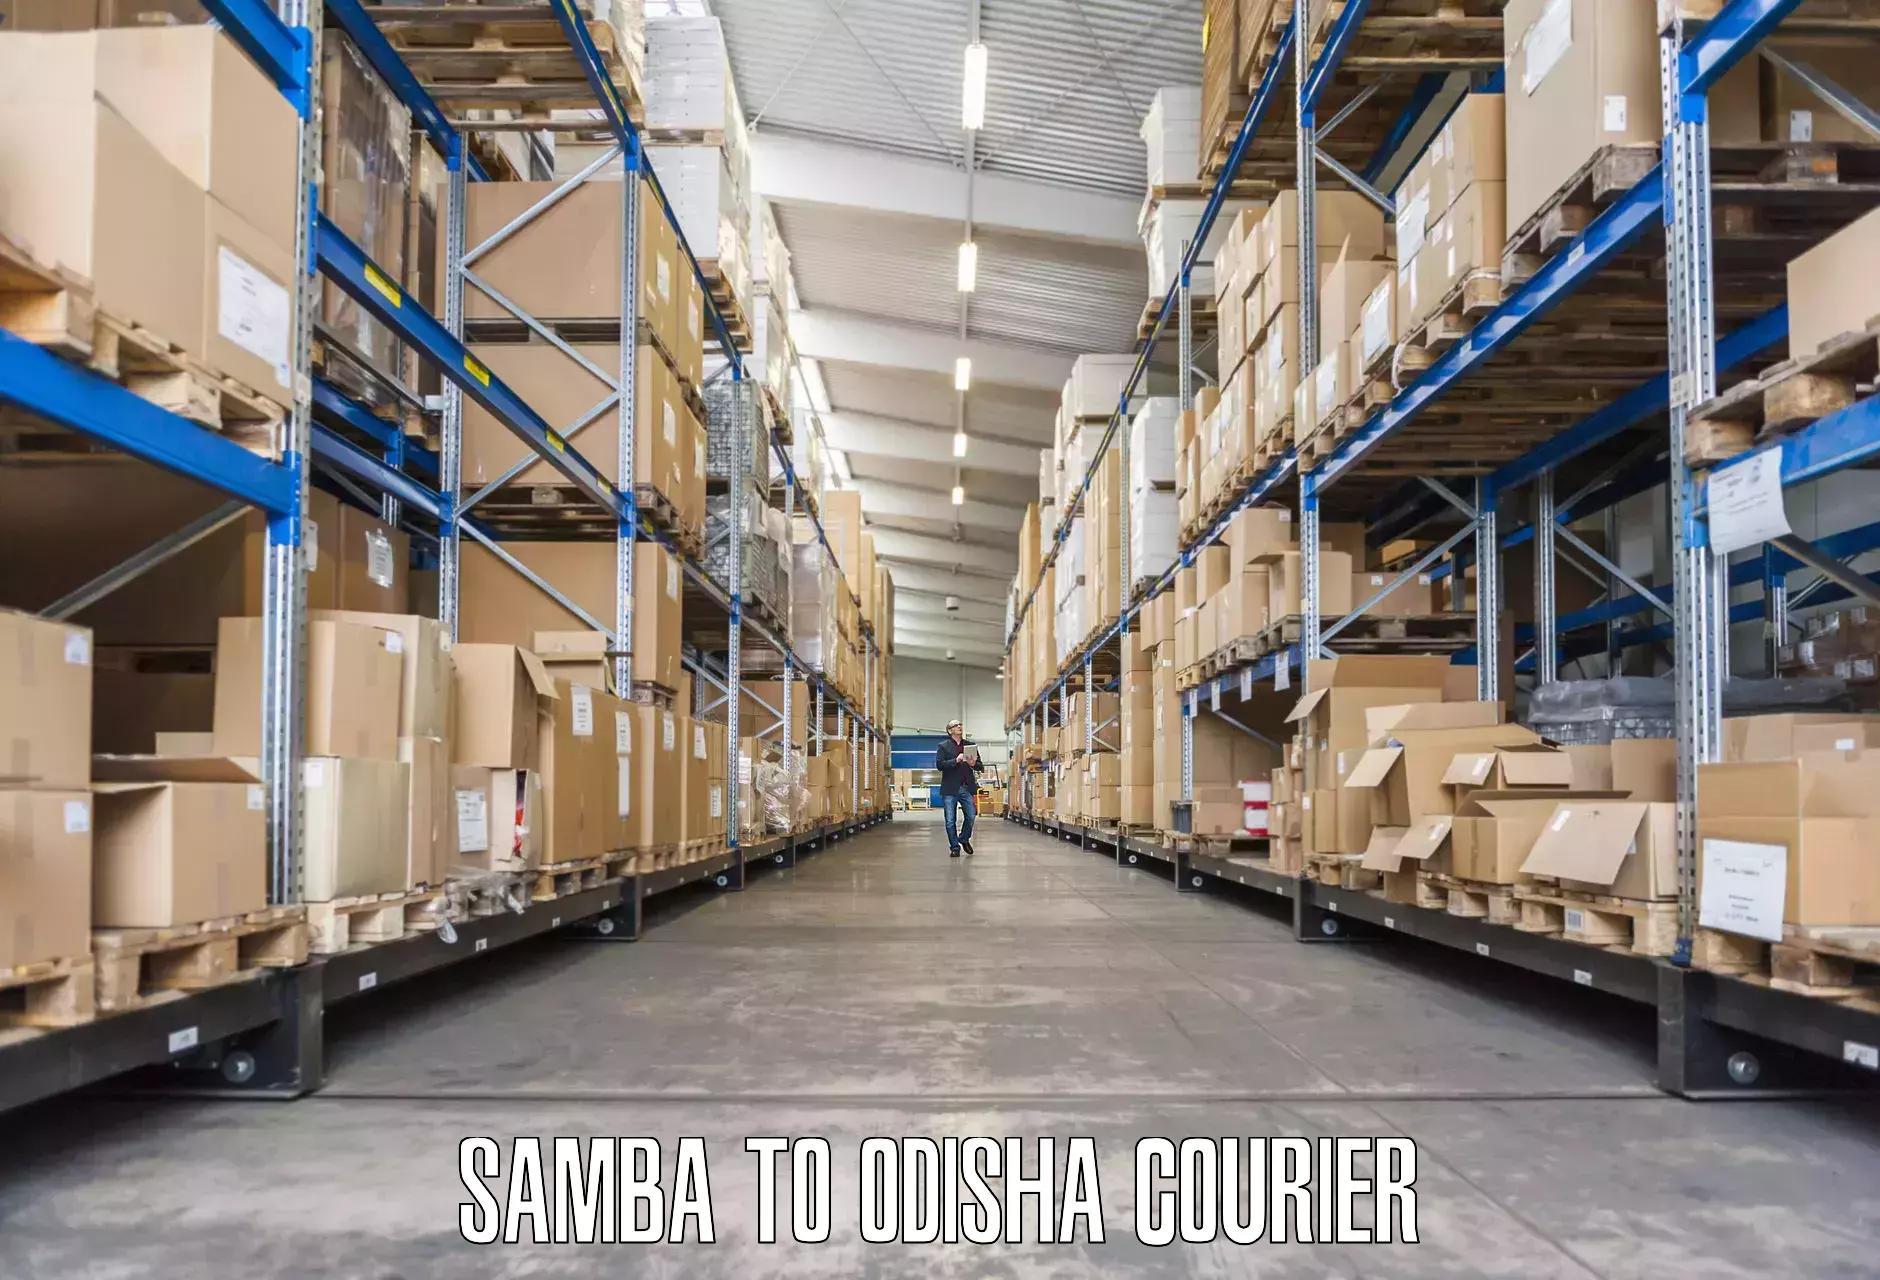 Efficient packing services in Samba to Koraput